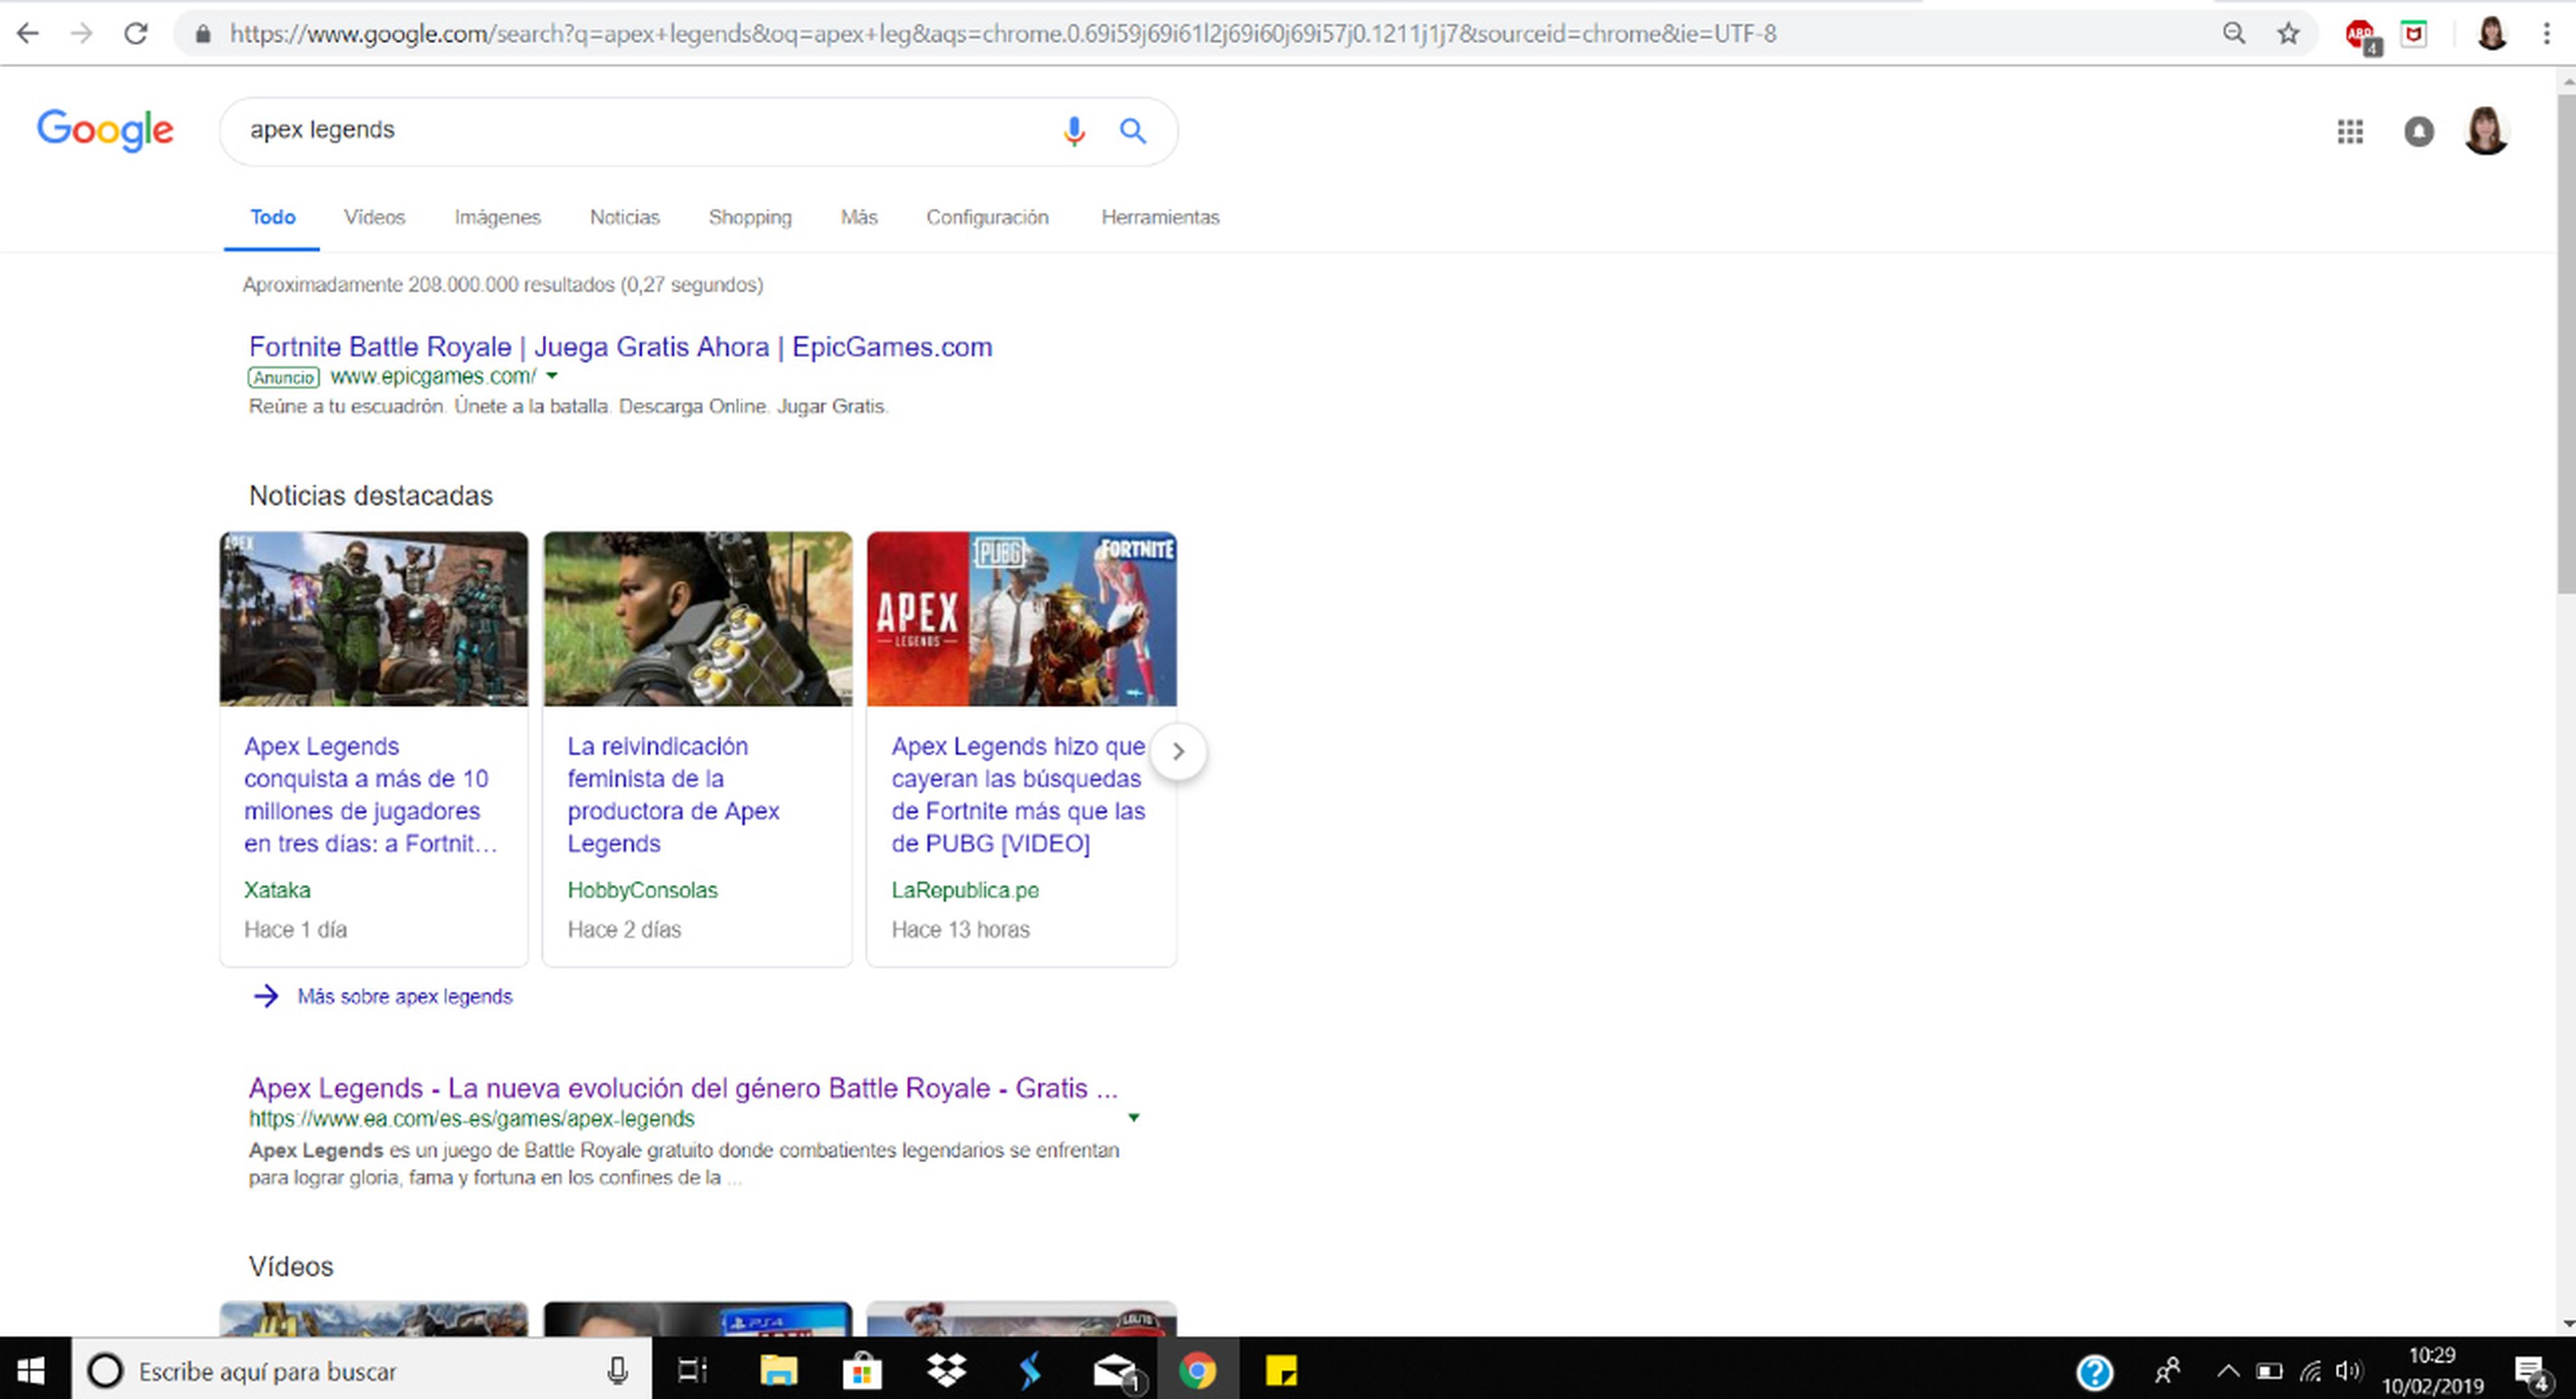 Fortnite aparece en las búsquedas de Apex Legends en Google